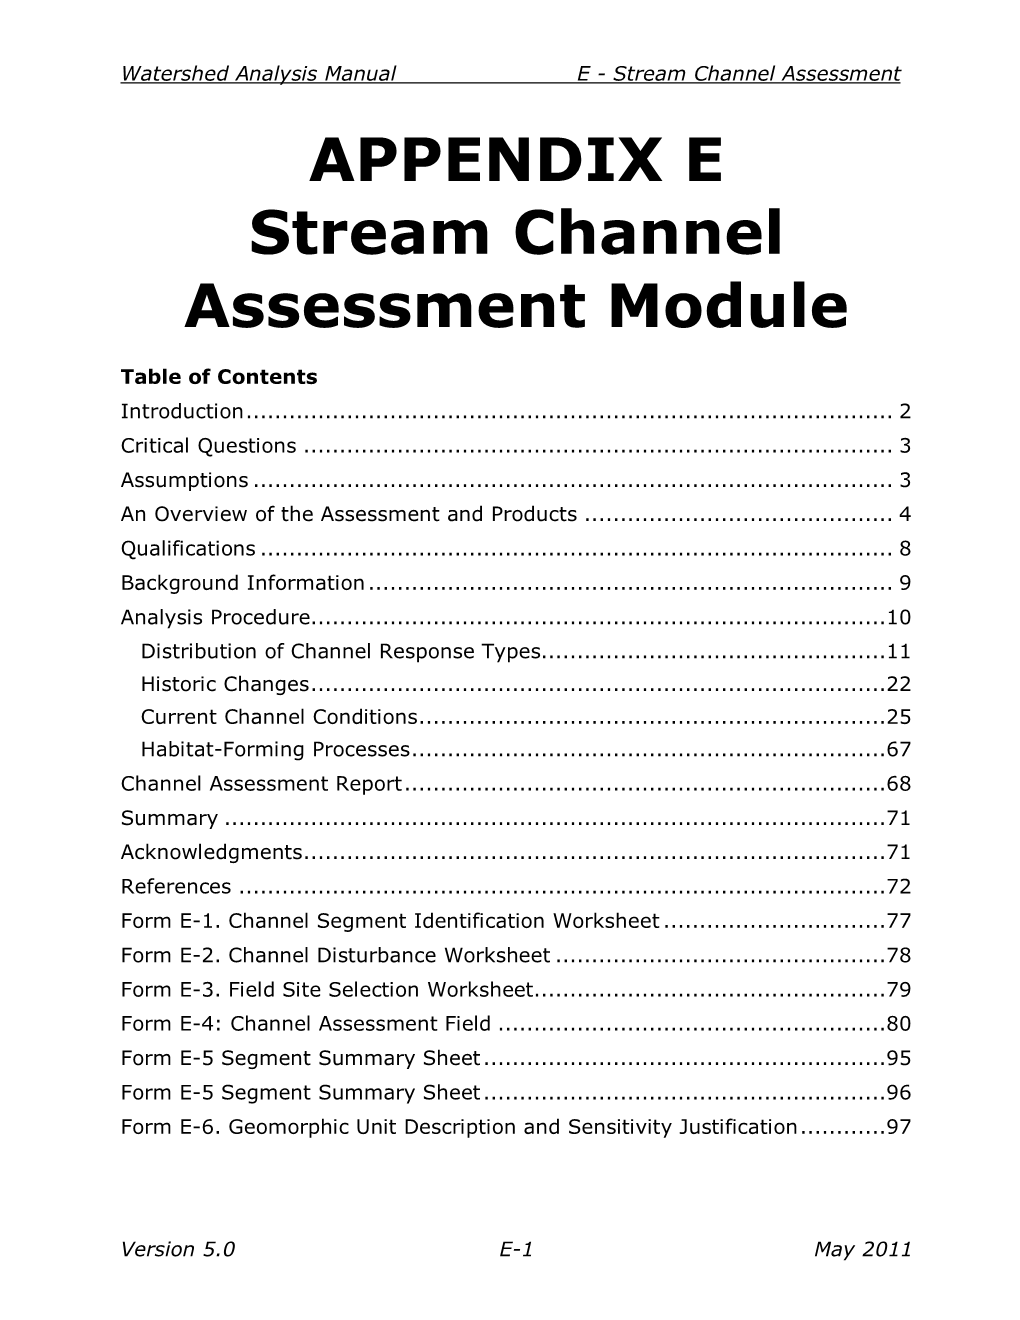 APPENDIX E Stream Channel Assessment Module